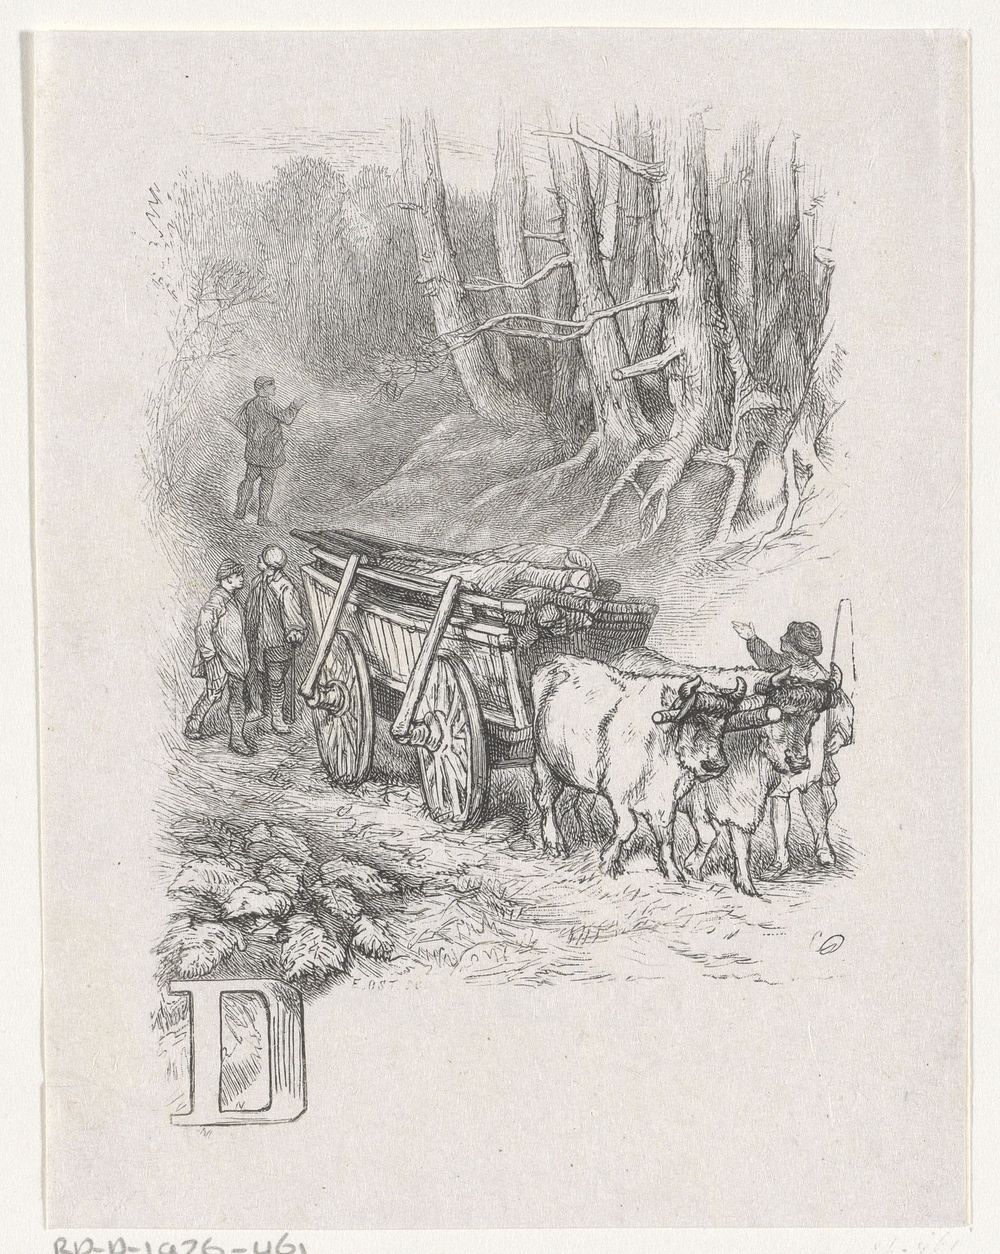 Letter D en een landschap met vier mannen en een ossenwagen (1856 - 1926) by Emil Ost and Charles Rochussen